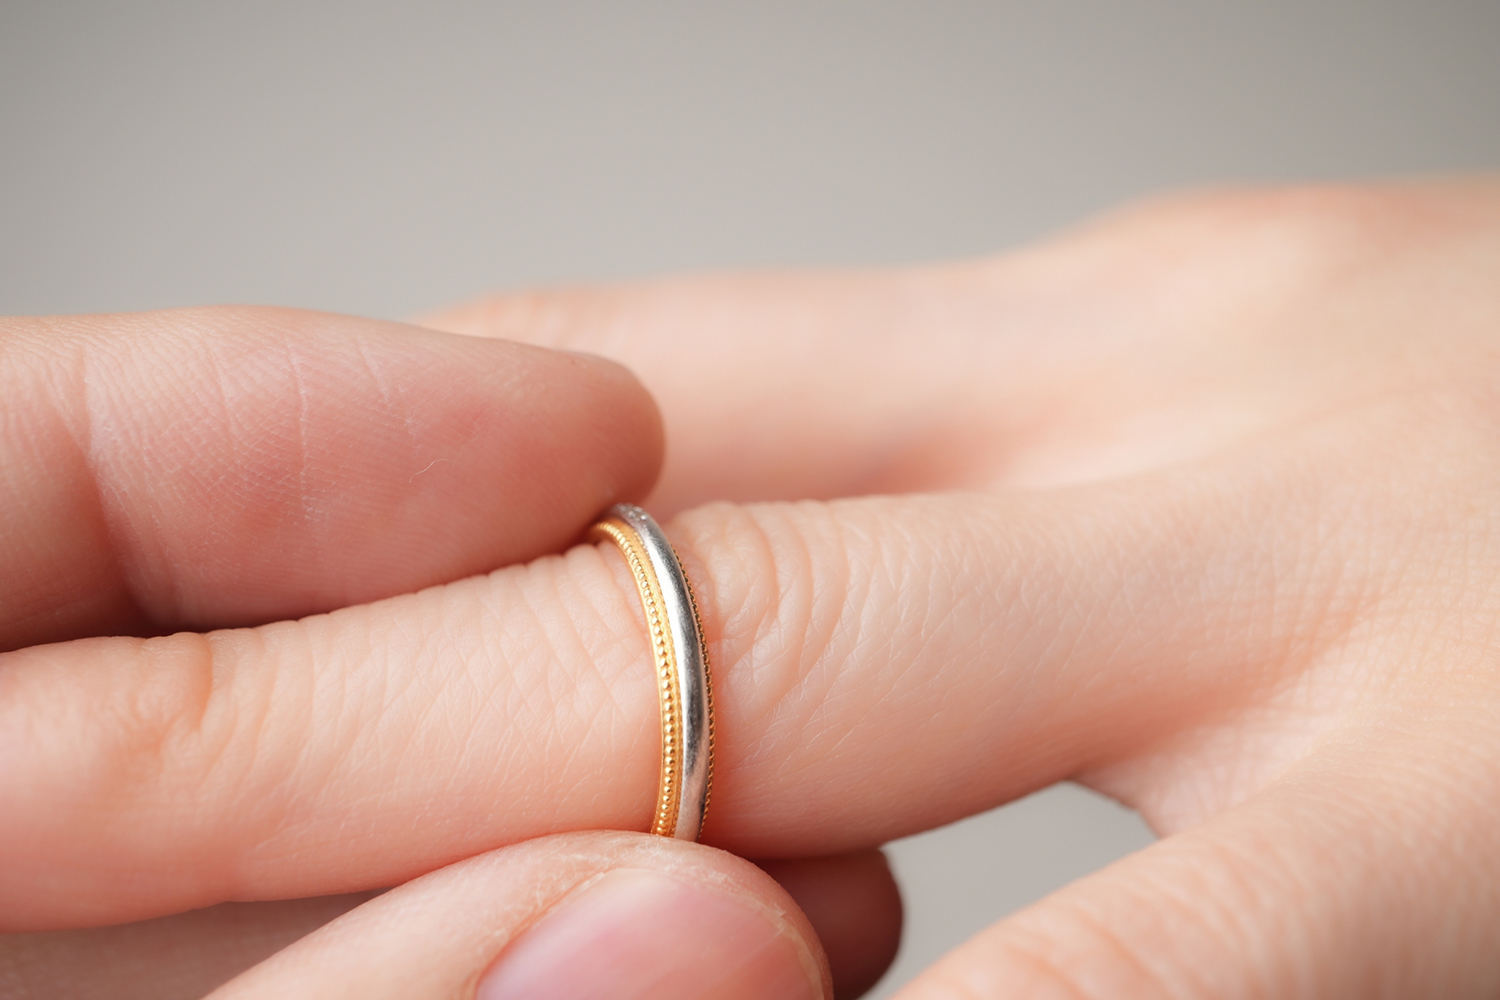 結婚指輪のイメージ